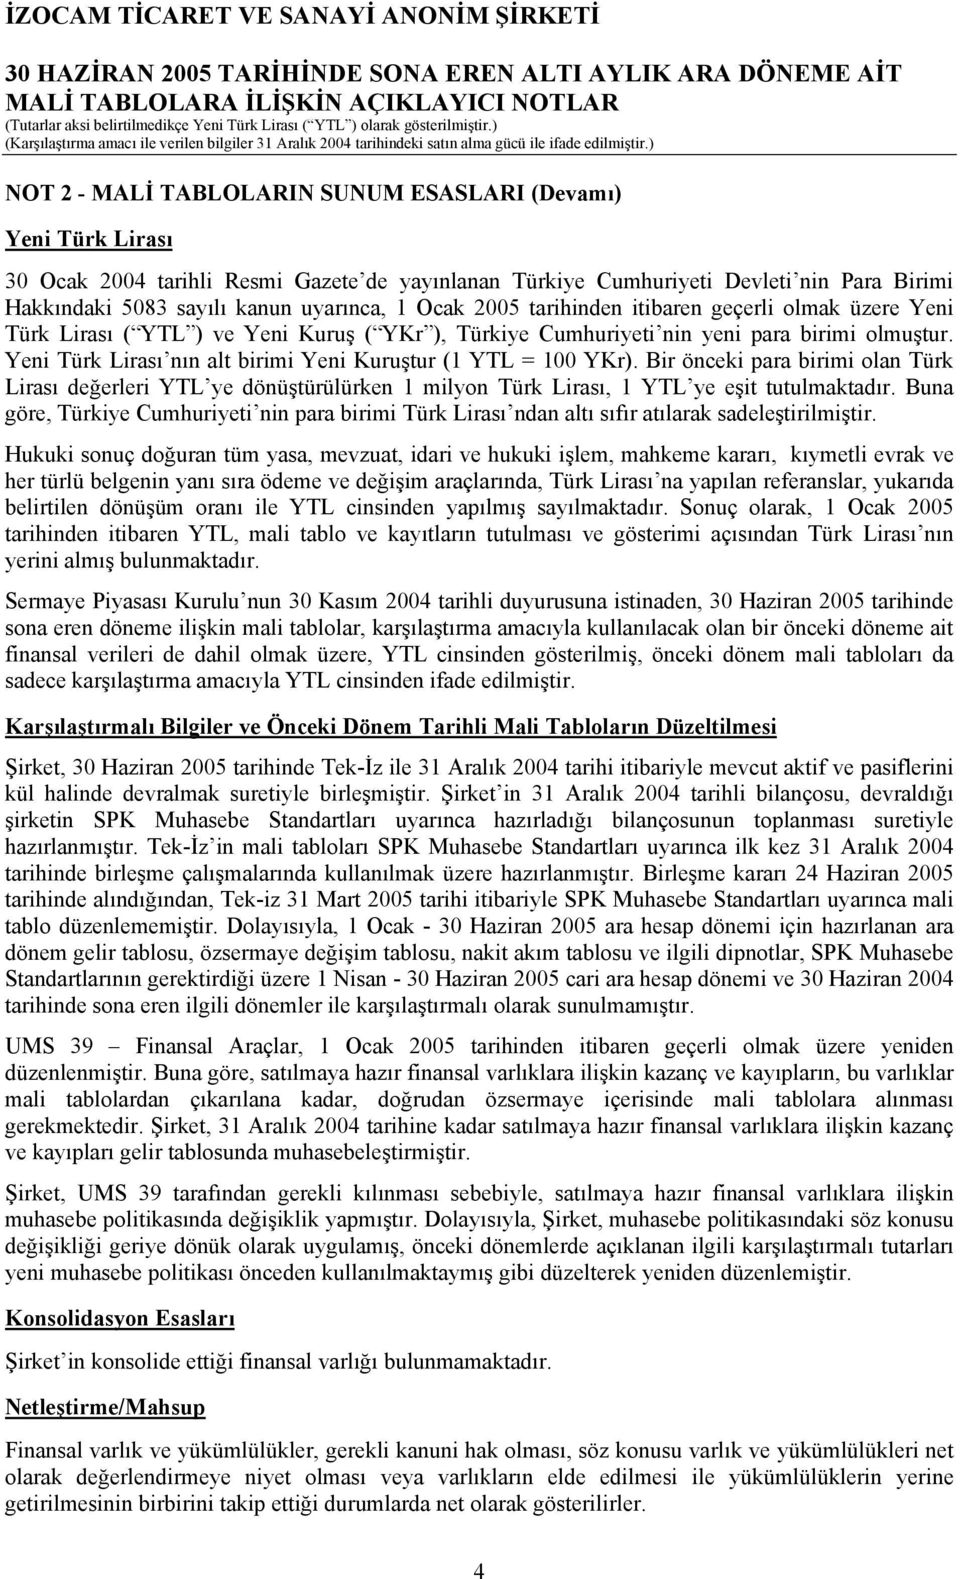 Yeni Türk Lirası nın alt birimi Yeni Kuruştur (1 YTL = 100 YKr). Bir önceki para birimi olan Türk Lirası değerleri YTL ye dönüştürülürken 1 milyon Türk Lirası, 1 YTL ye eşit tutulmaktadır.